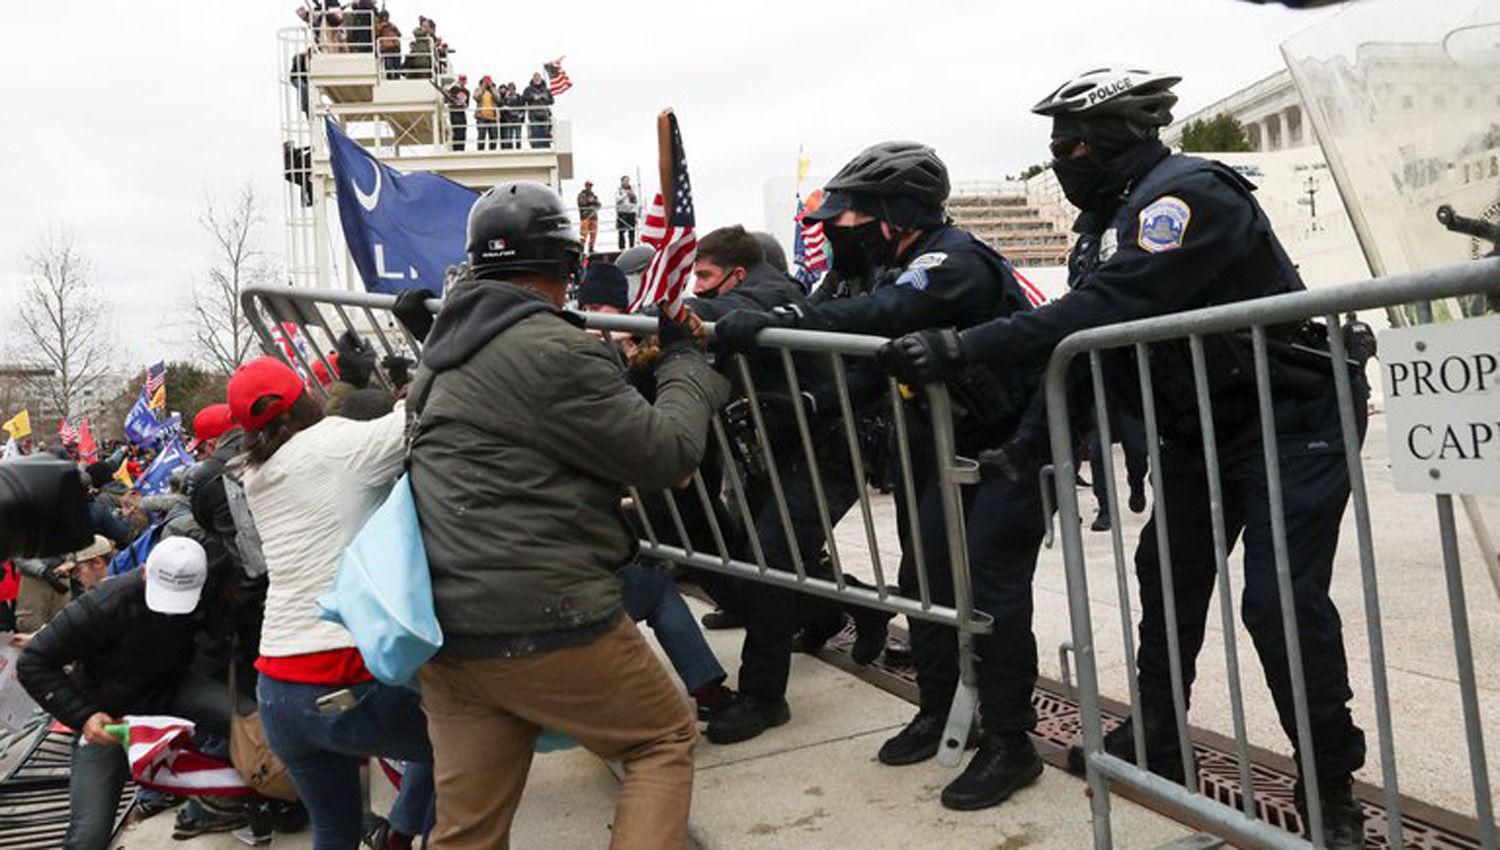 Partidarios de Trump se enfrentaron con la policiacutea durante protestas en Washington